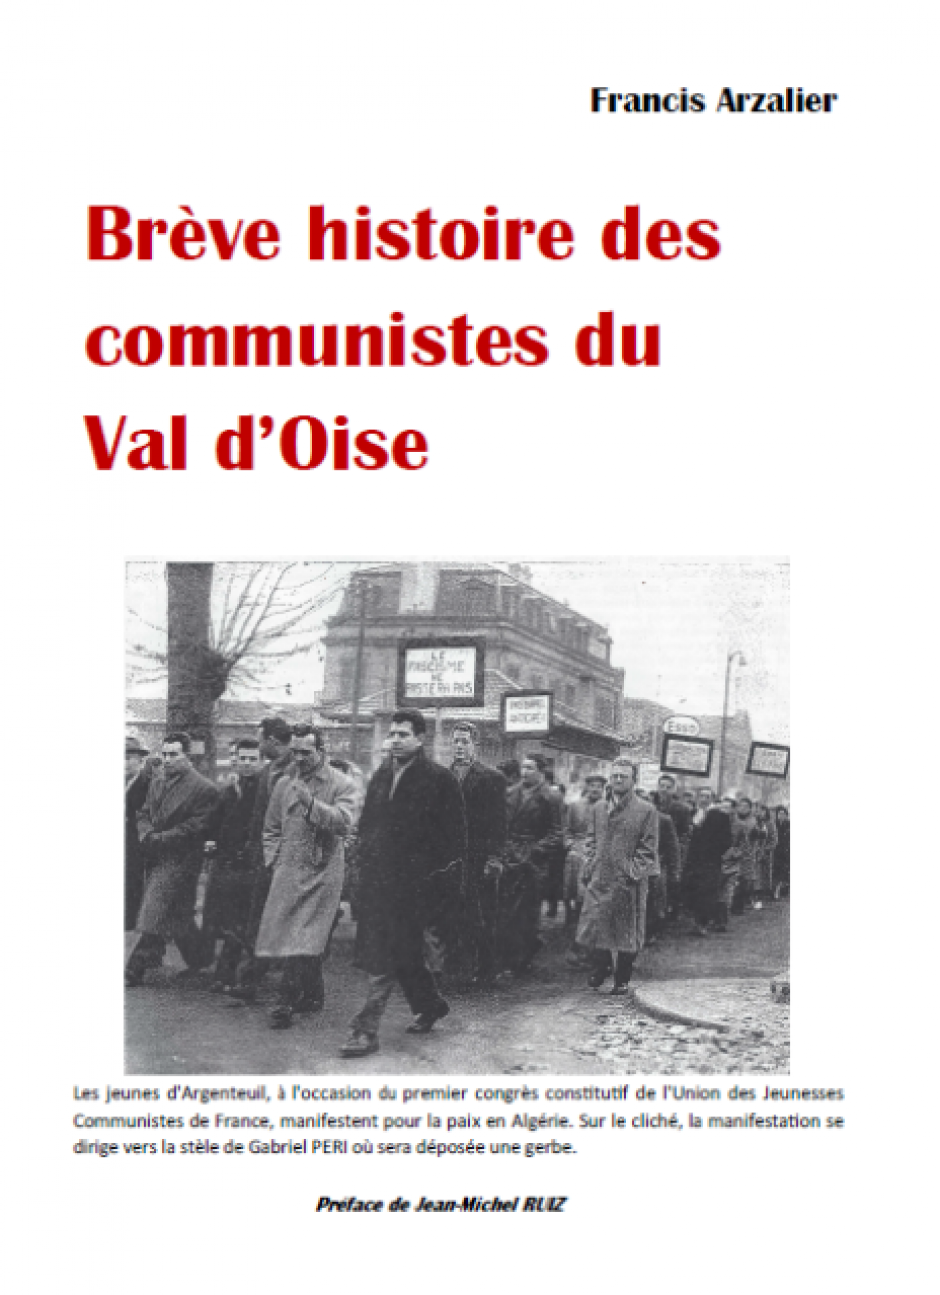 Brève histoire des communistes du Val d 'Oise, Francis Arzalier